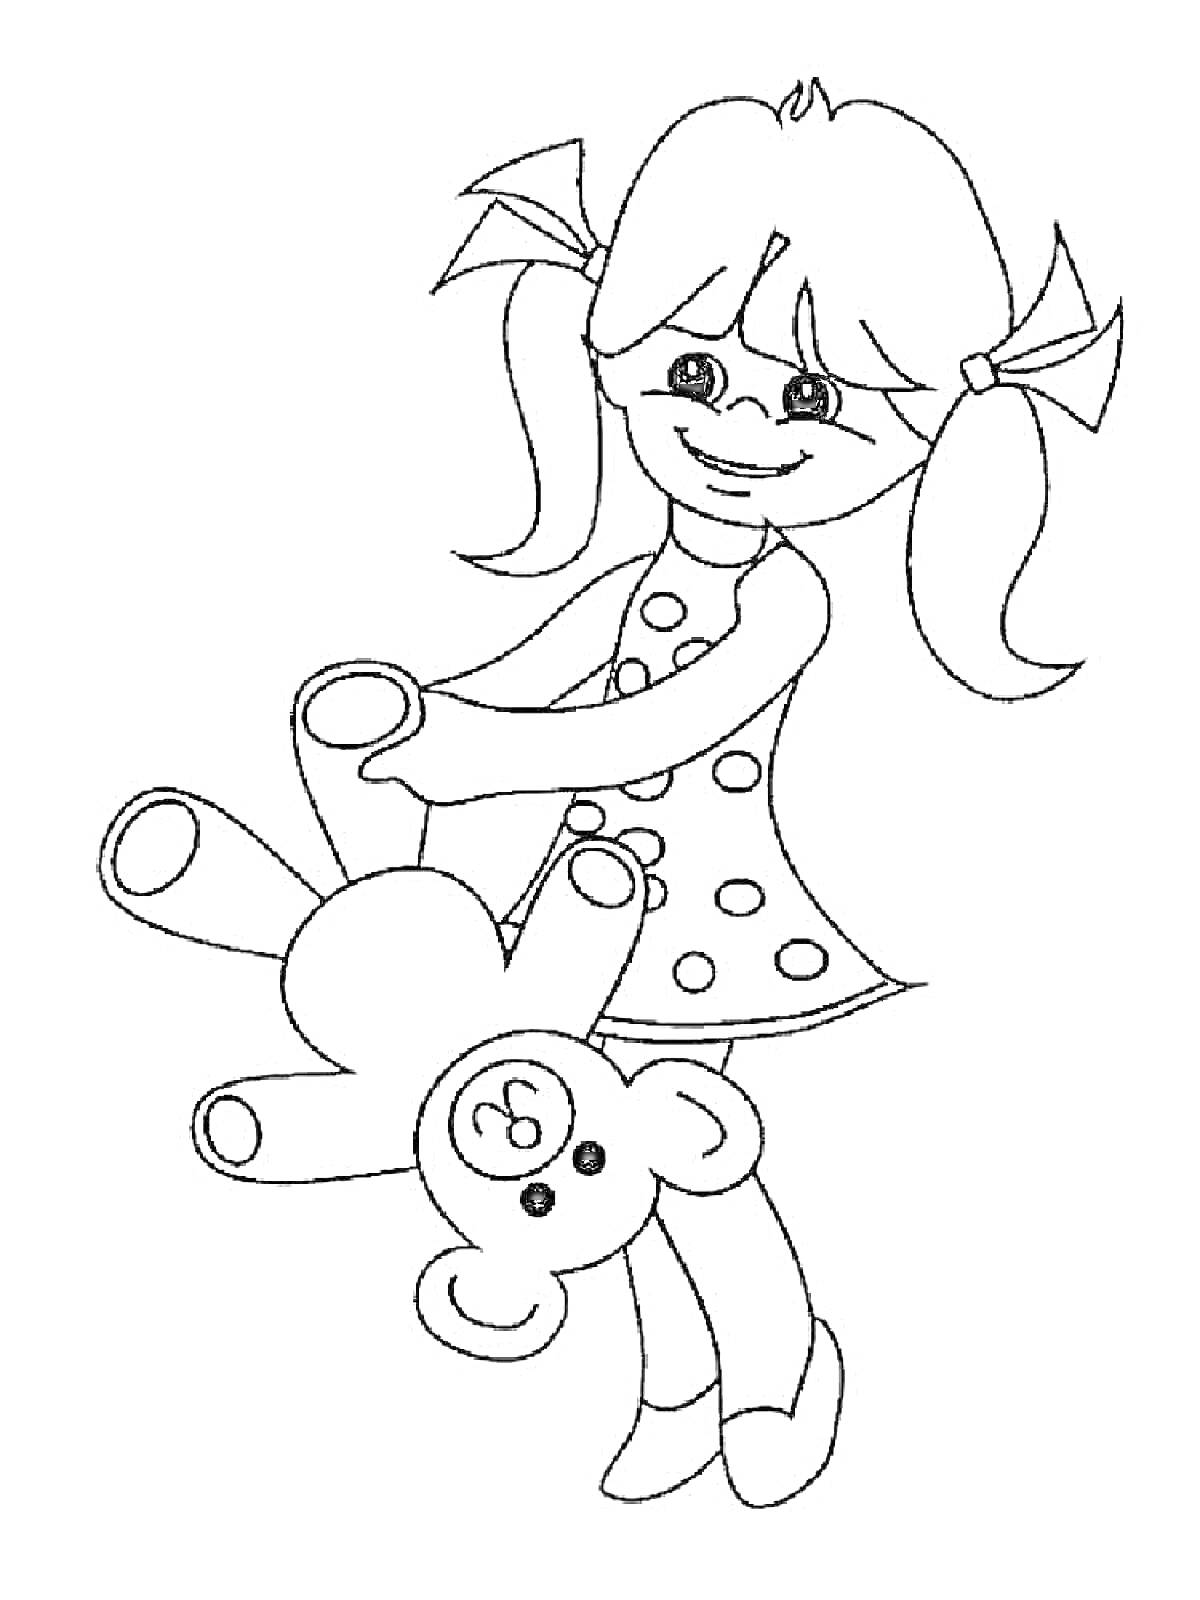 Девочка с косичками в платье с горошком, держащая плюшевого мишку